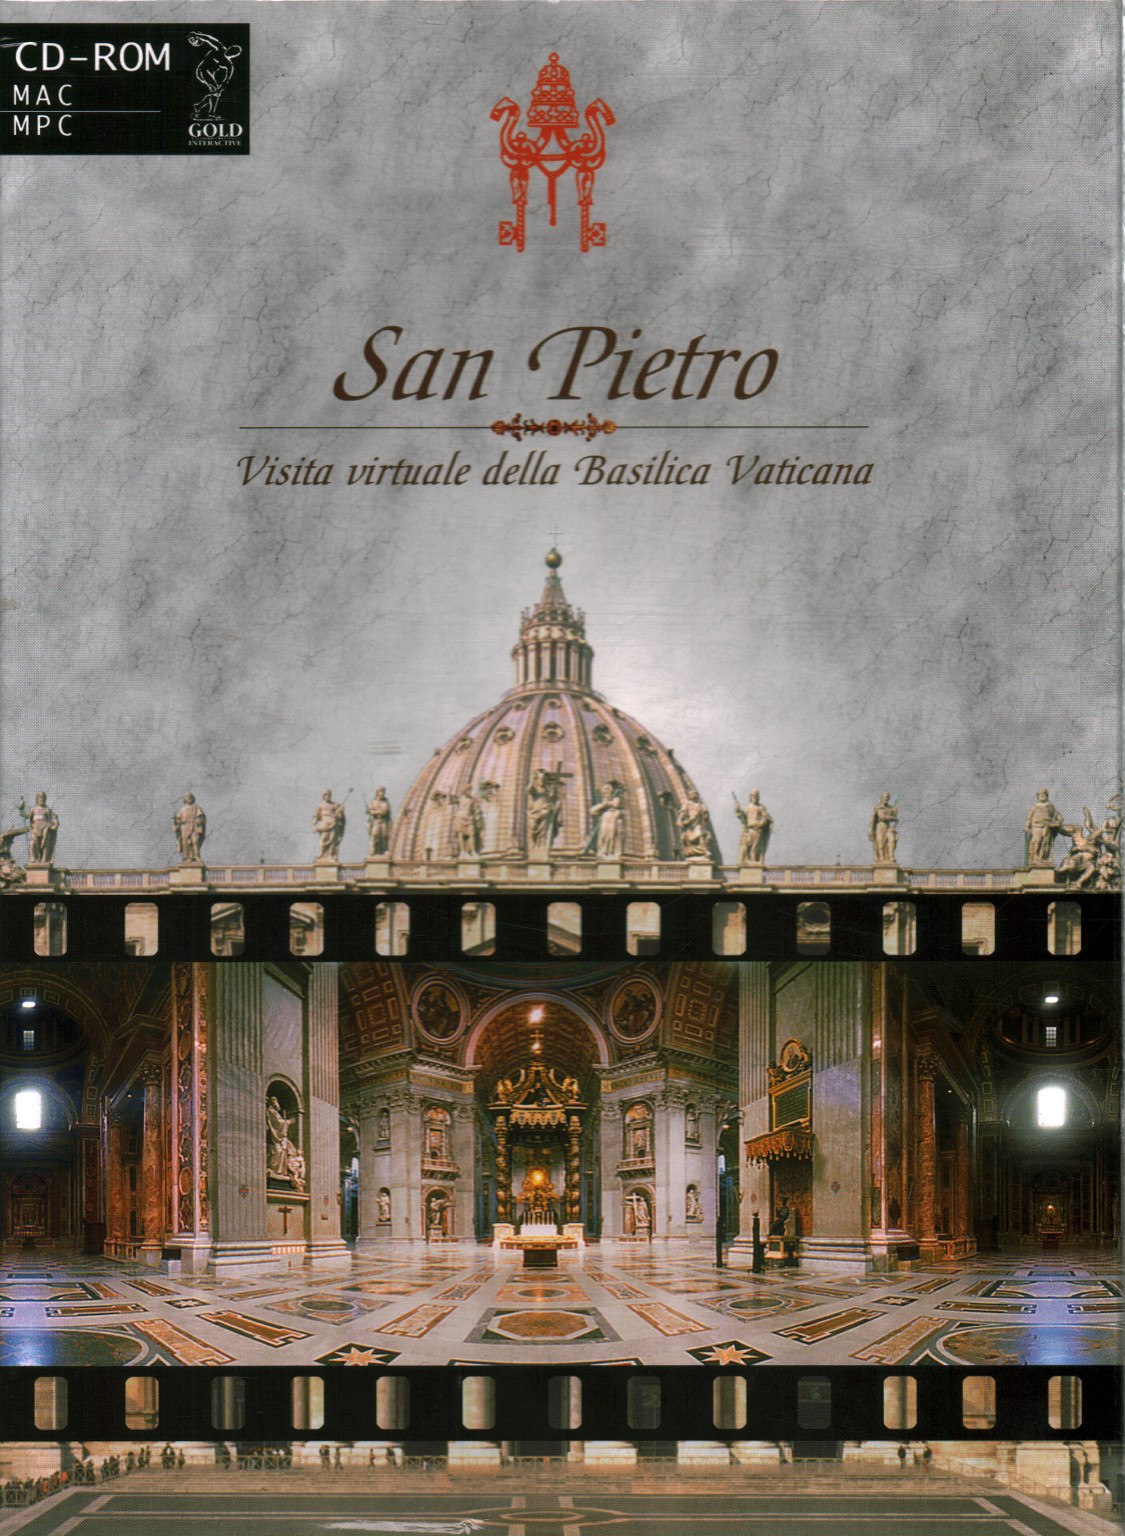 St. Peter. Virtueller Besuch der Vatikanischen Basilika, AA.VV